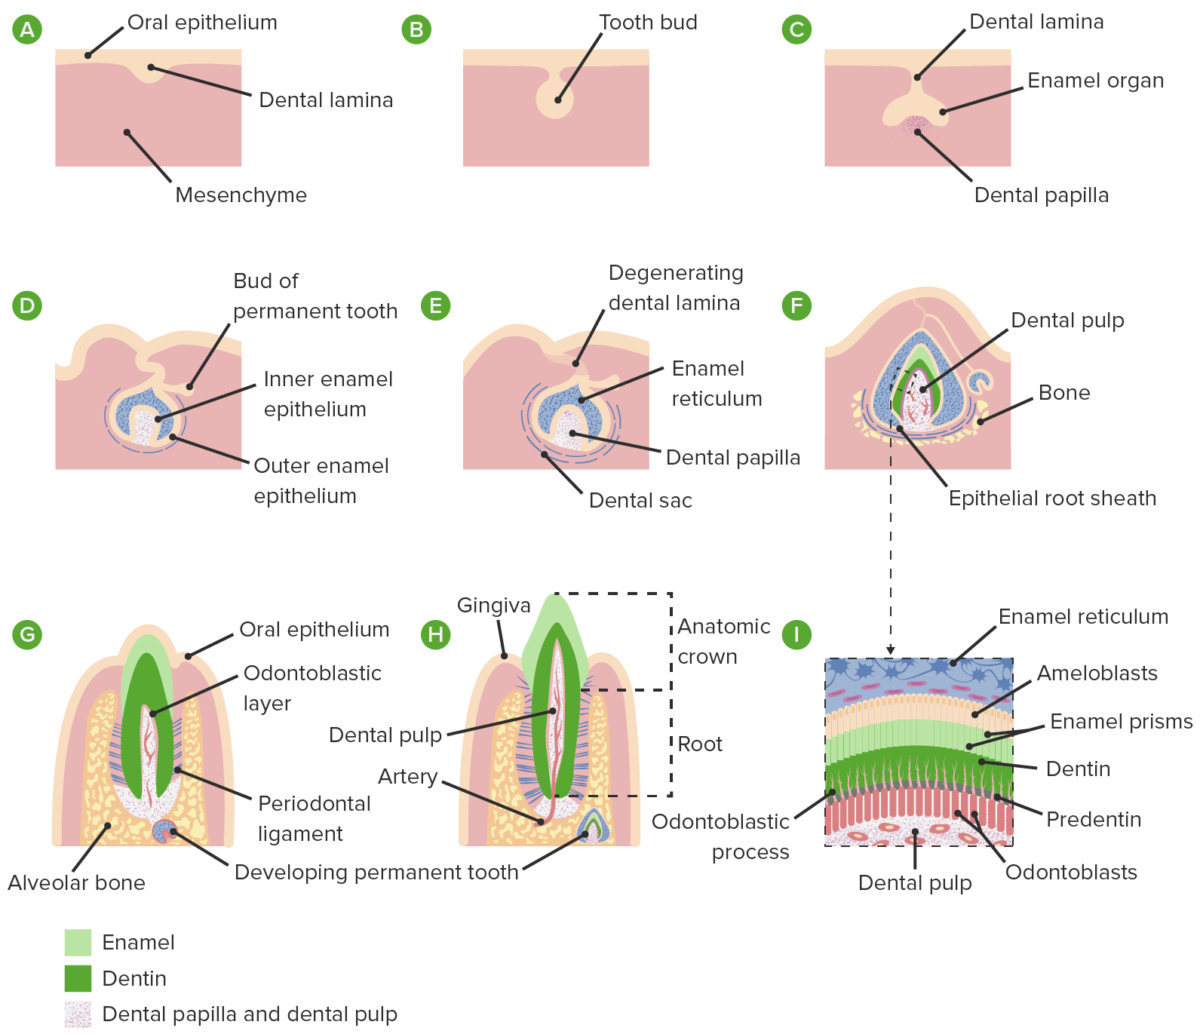 Formación de la papila dental y del saco dental